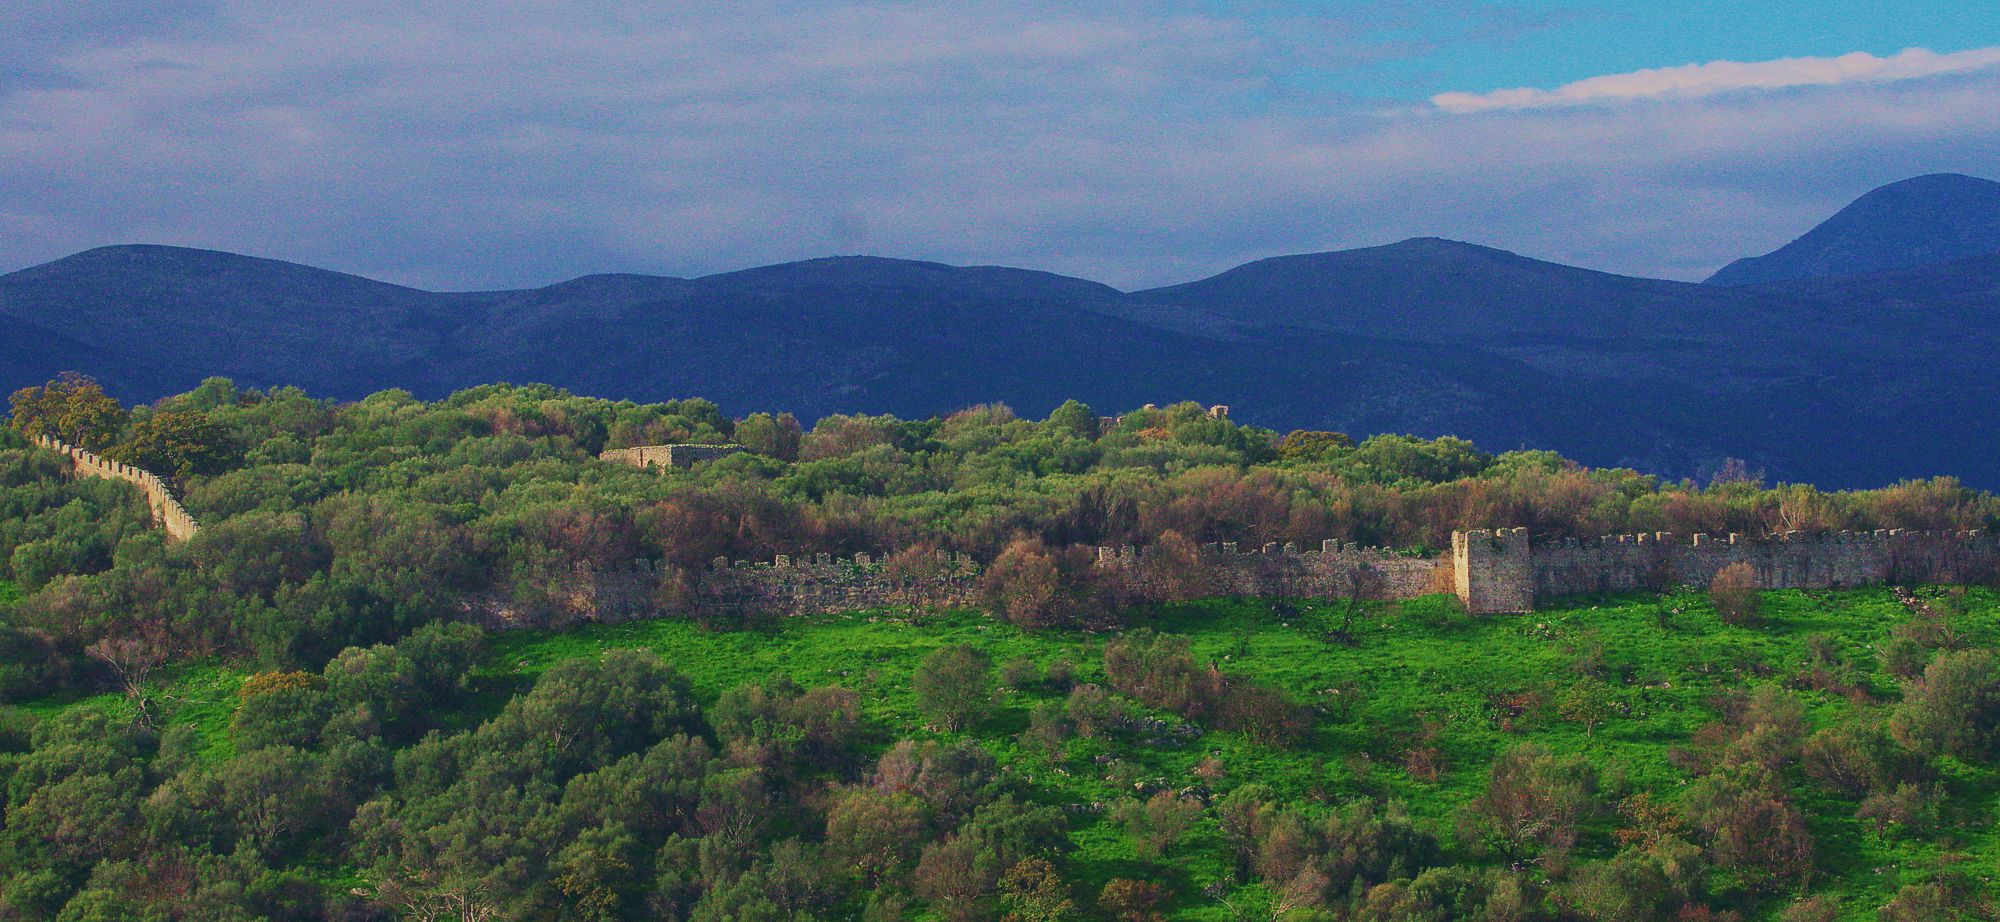 Γύθειο topoguide: Το κάστρο του Πασαβά